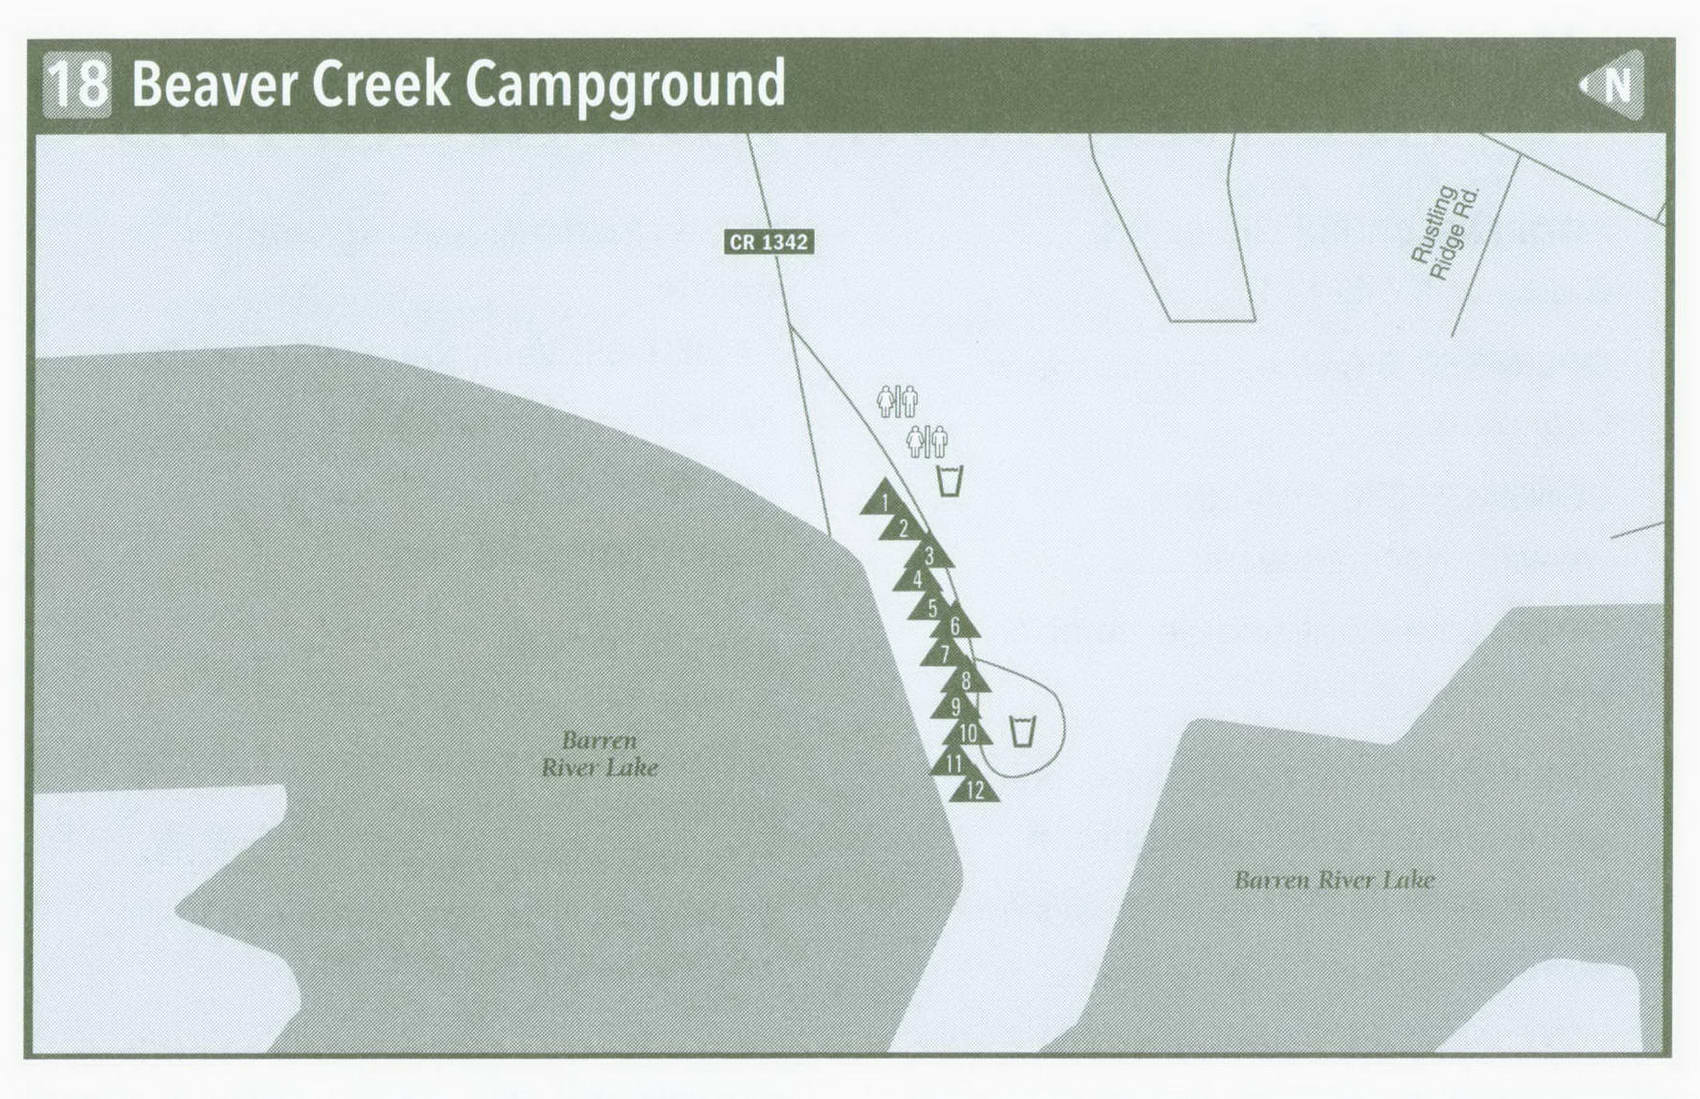 Plan of Beaver Creek Campground